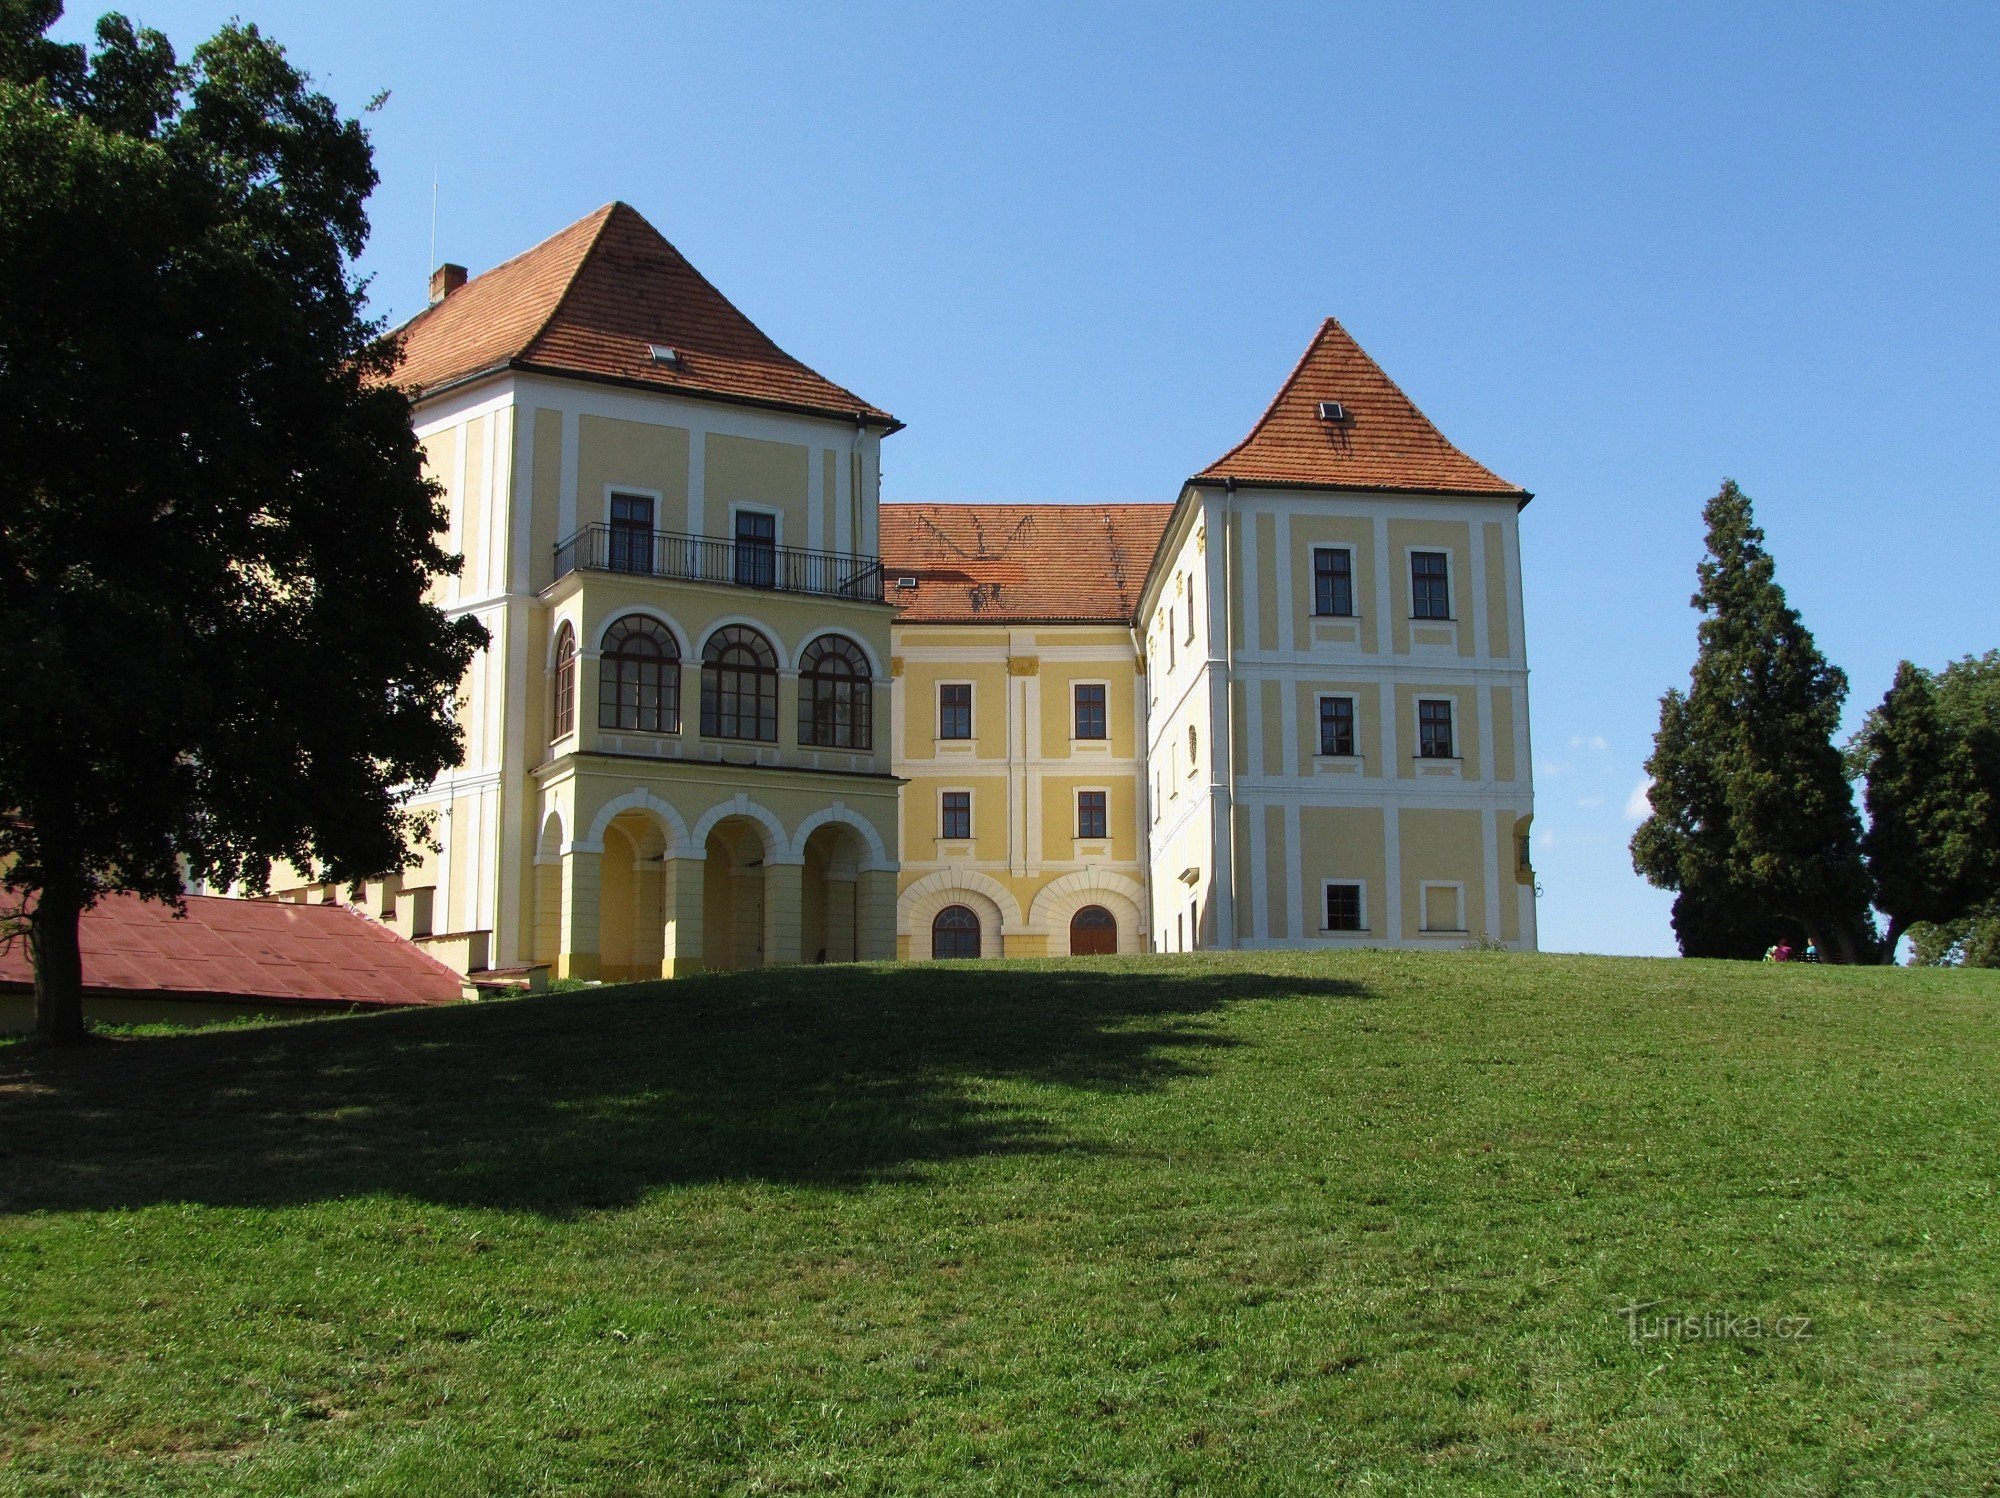 Posjet dvorcu u Letovicama